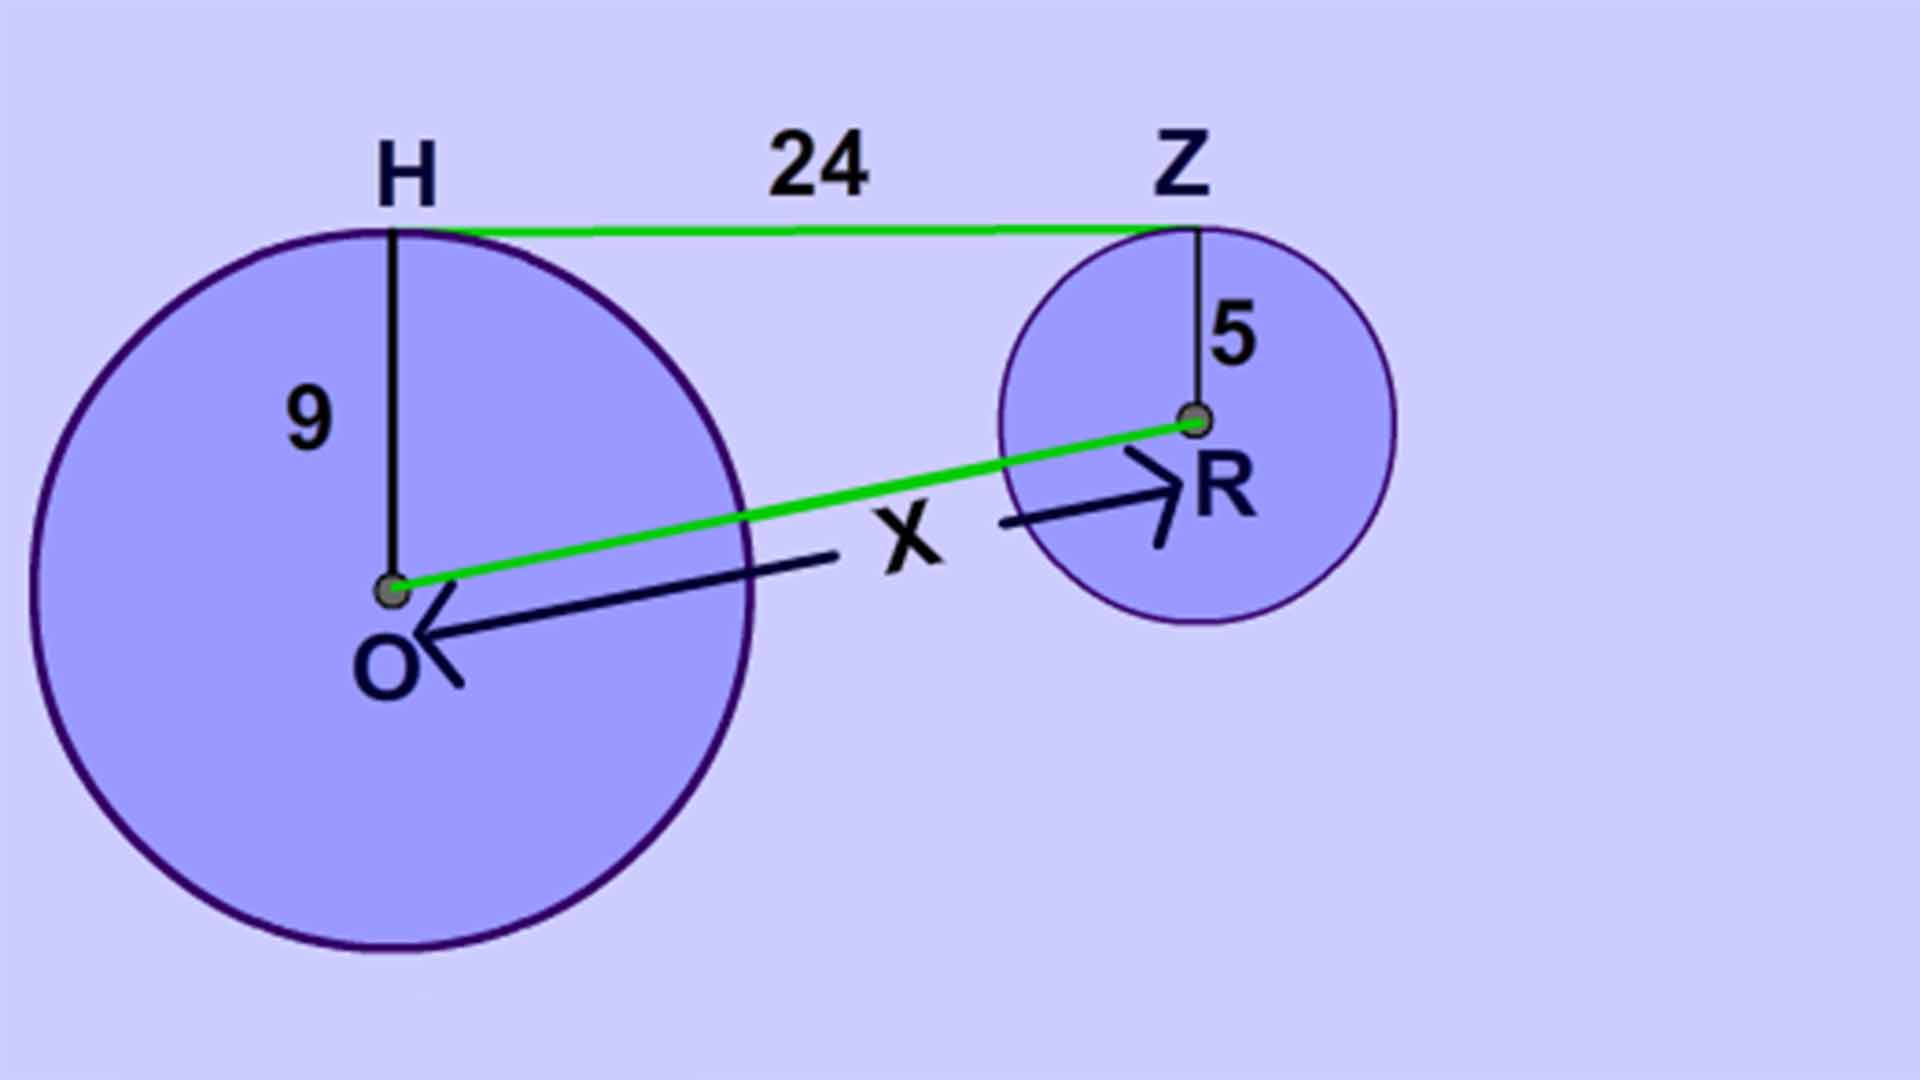 آموزش پيداکردن شعاع و مرکز در انواع معادلات دايره- هندسه 3